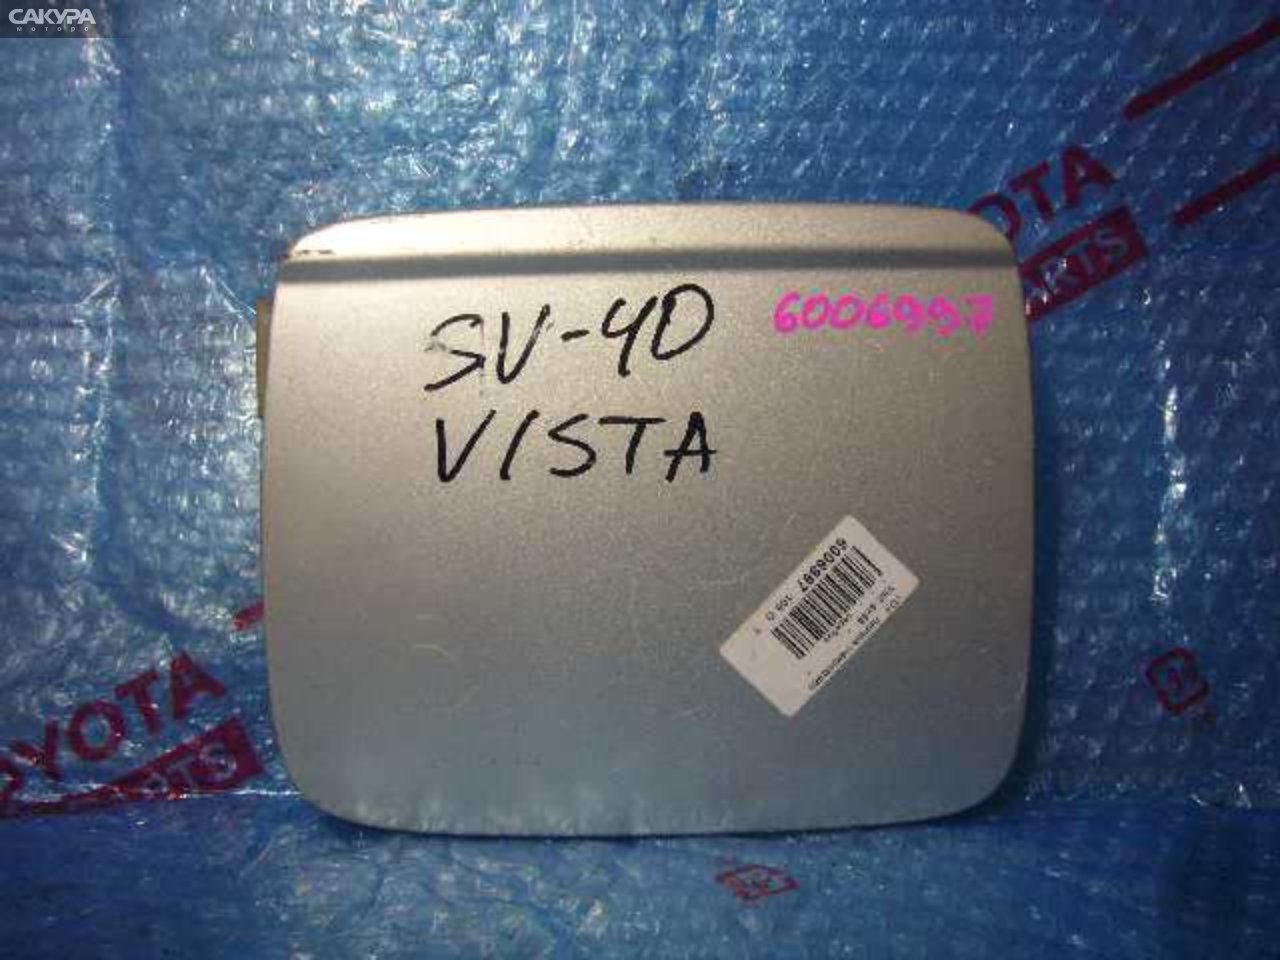 Лючок топливного бака Toyota Vista SV40: купить в Сакура Кемерово.